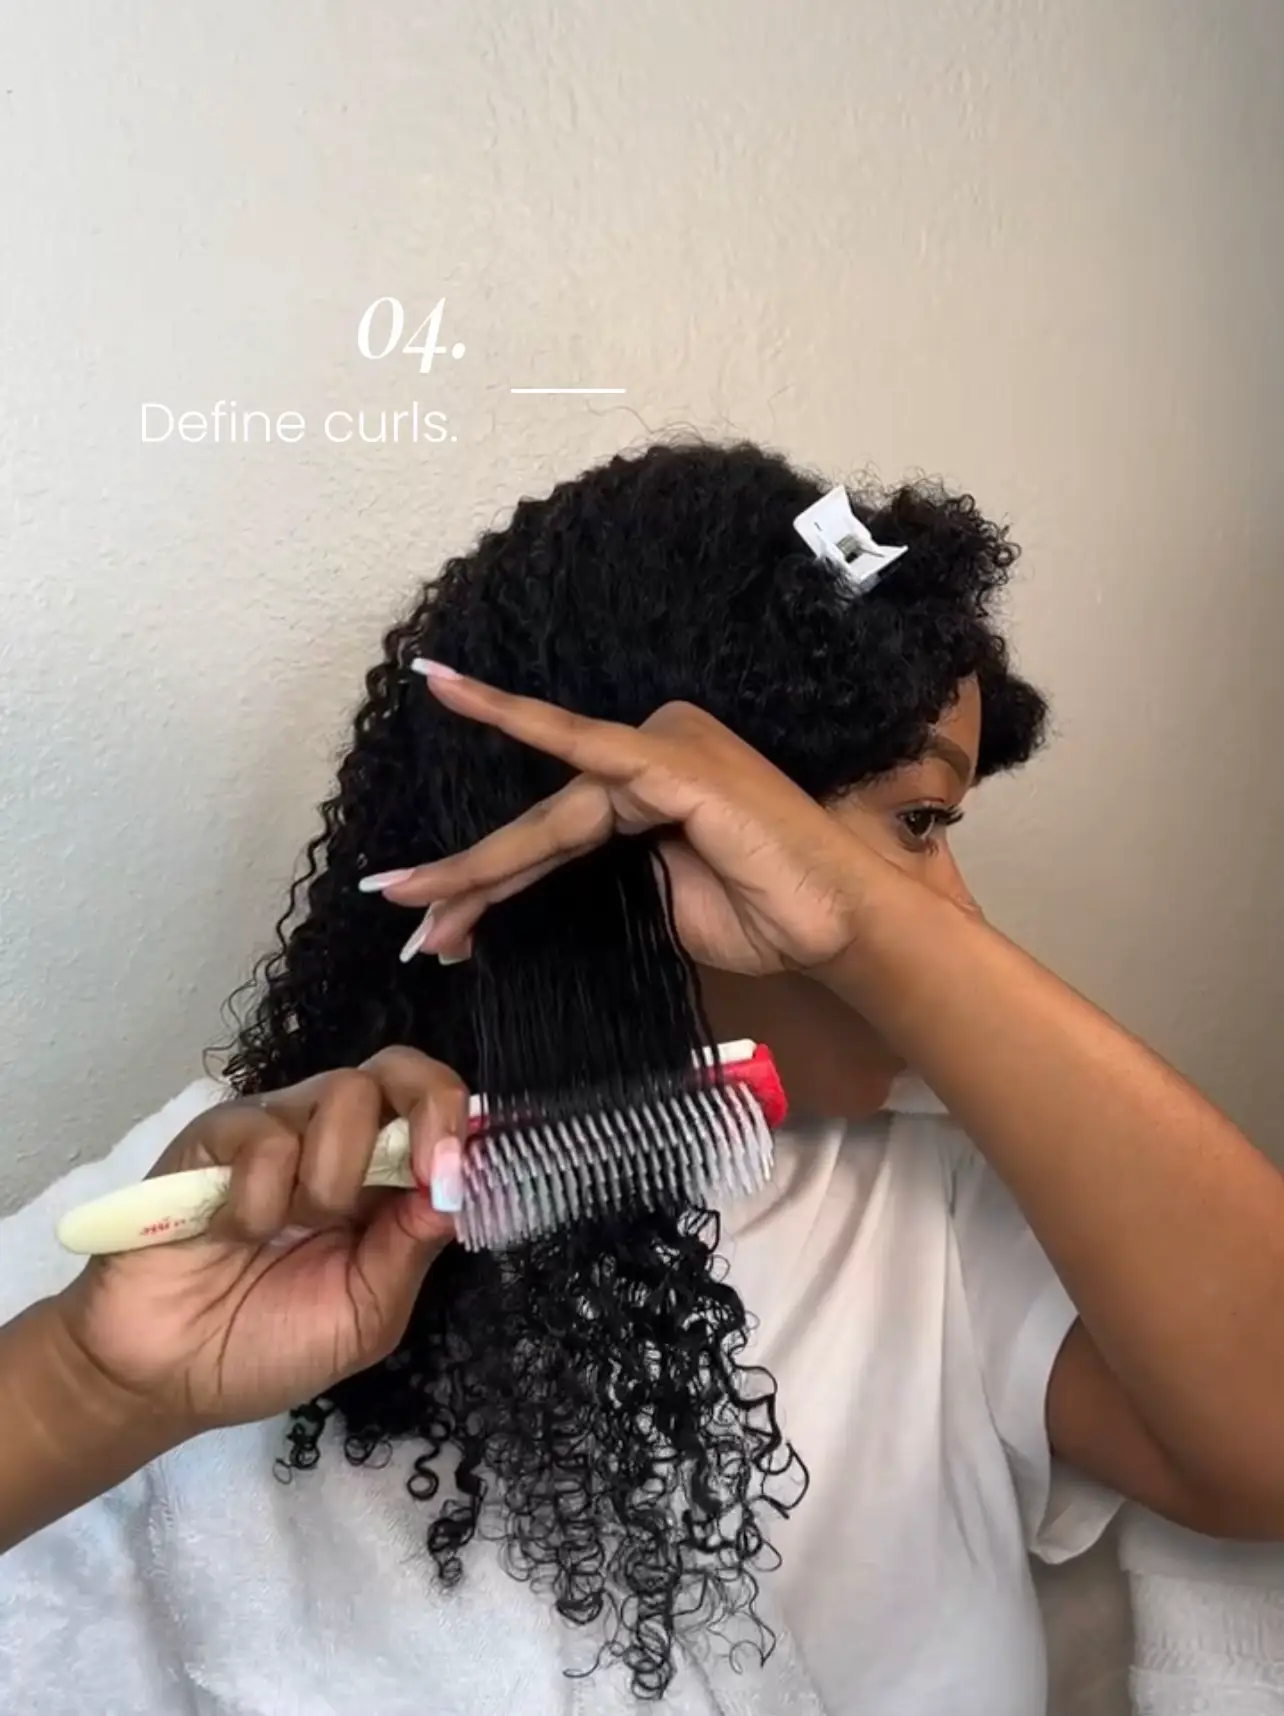 beginner friendly wig install tutorial🥰